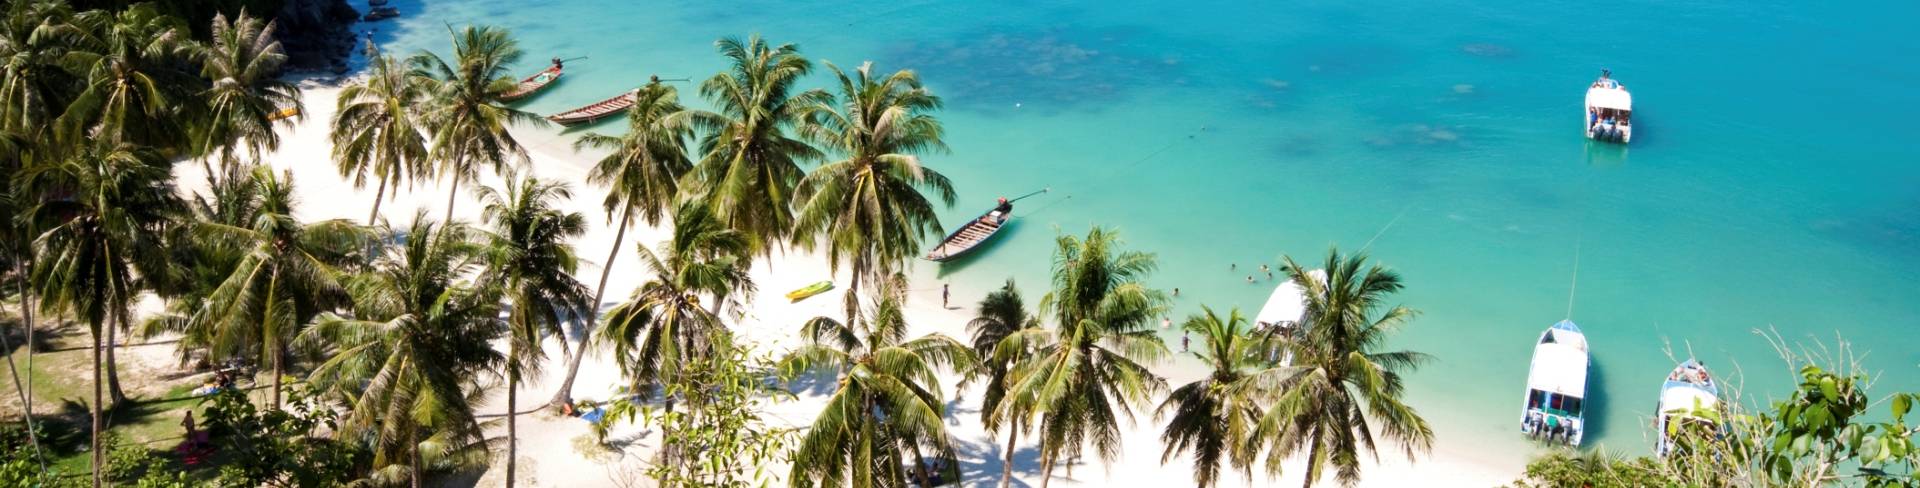 Остров Самуи - пляжный курорт в Таиланде